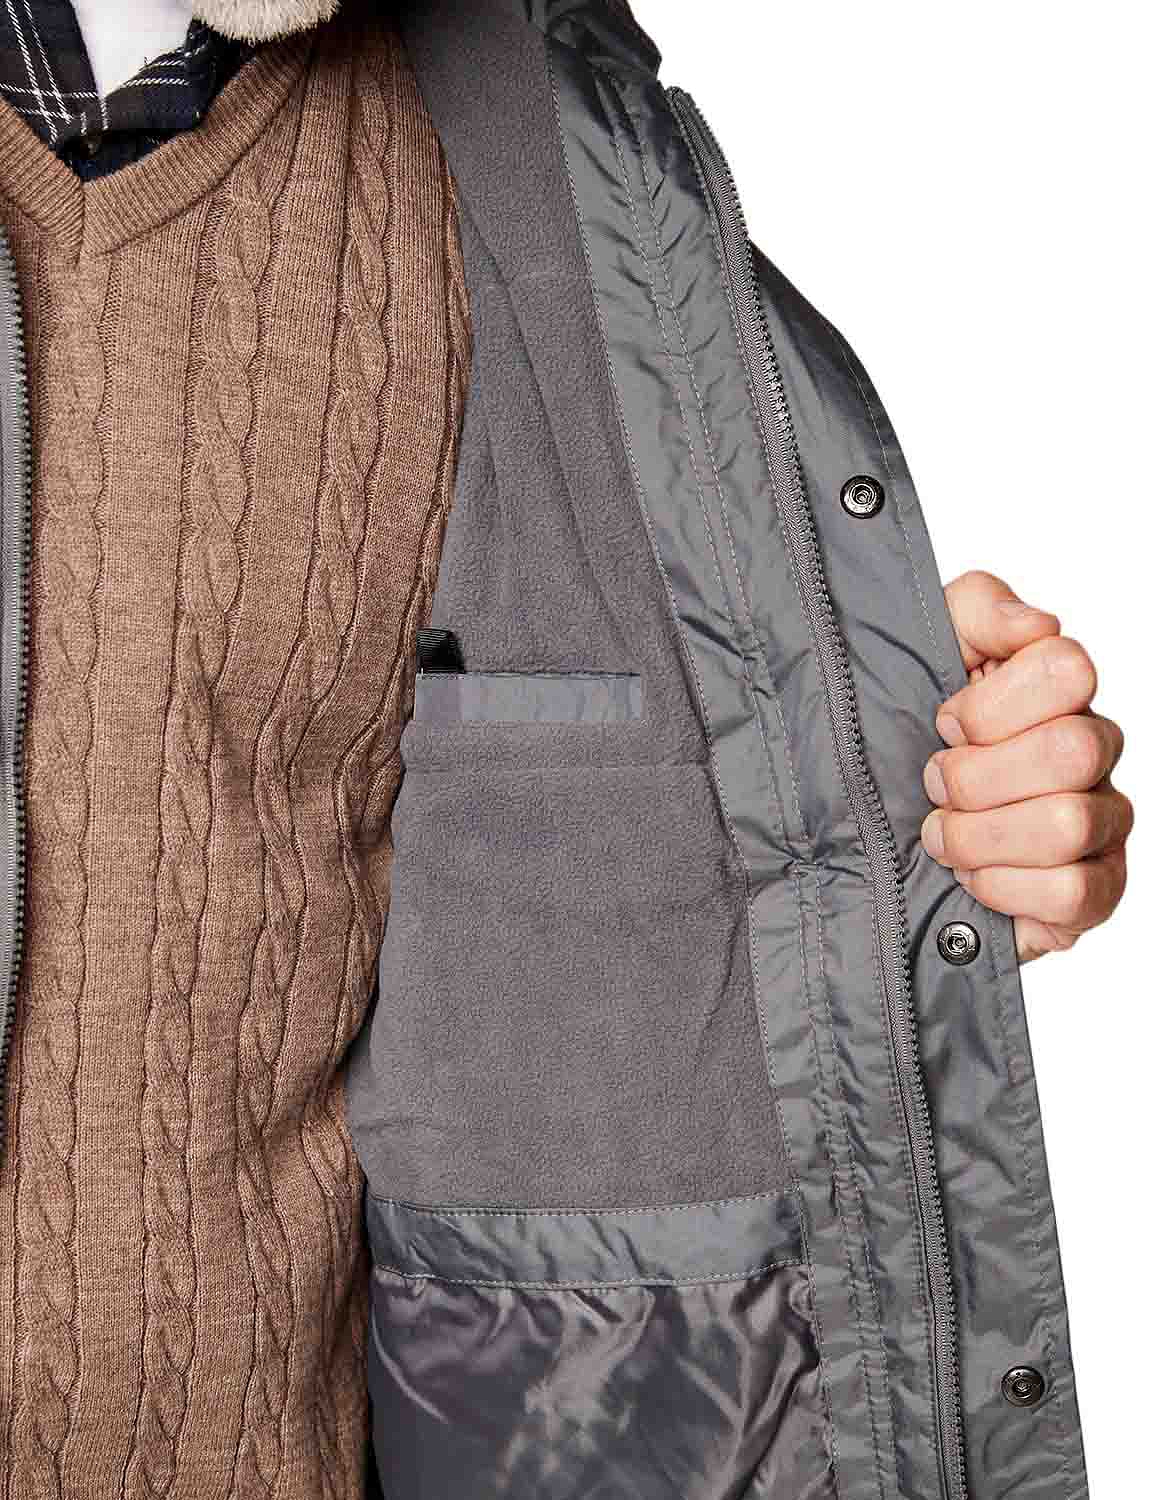 Fully Waterproof Fleece Lined Parka | Chums